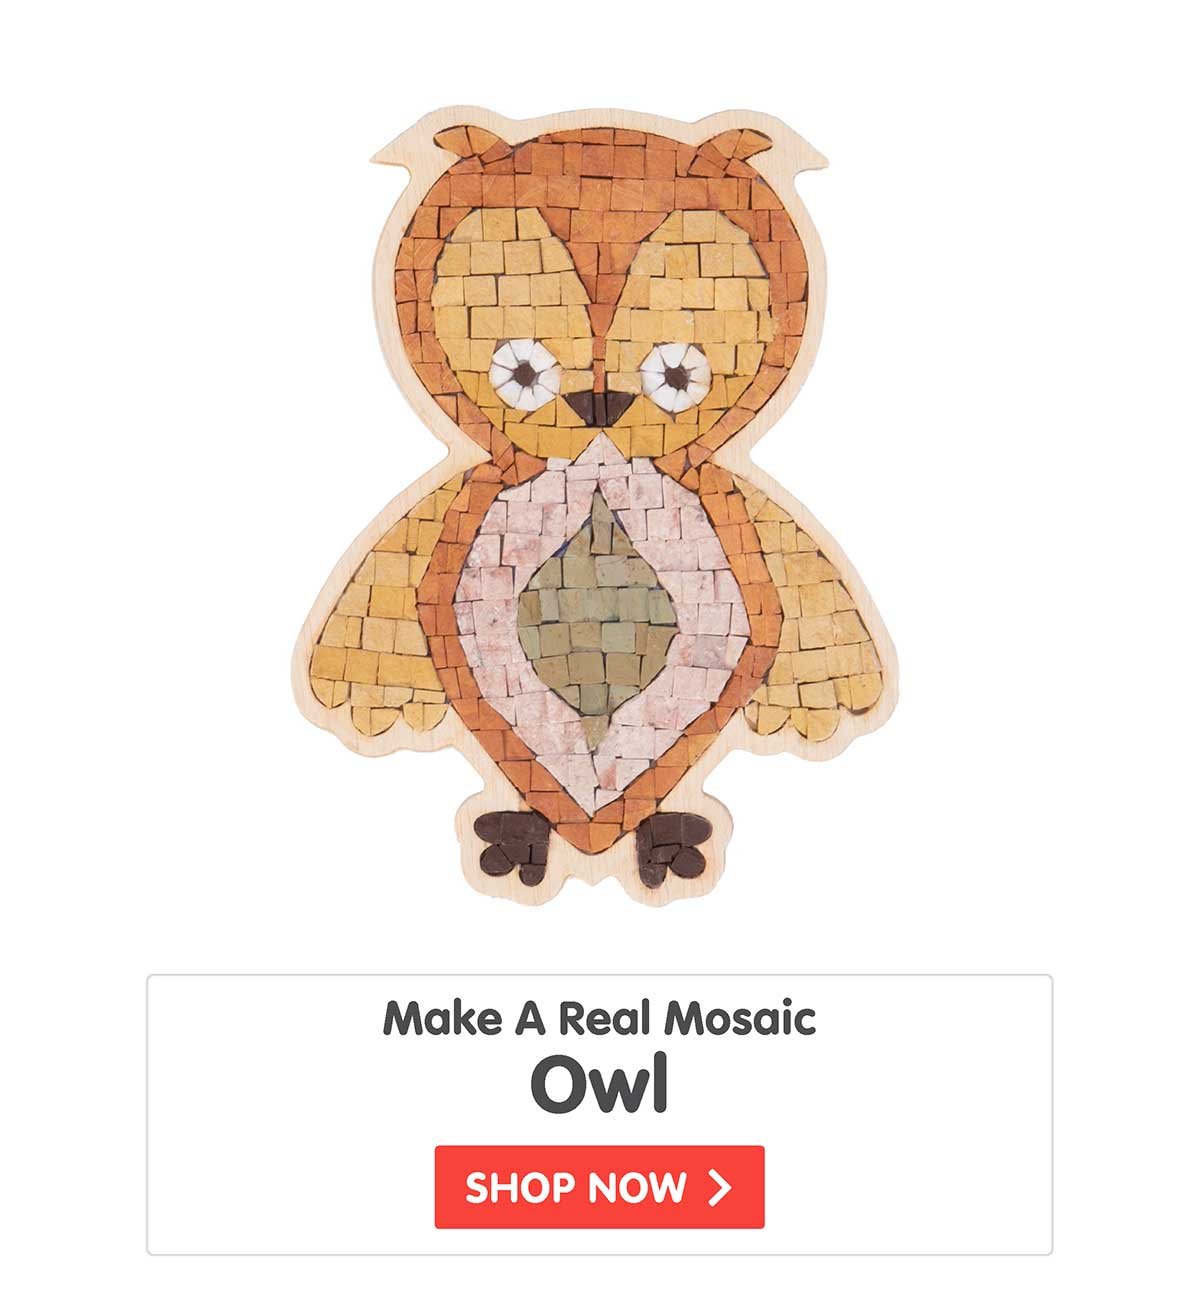 Make A Real Mosaic - Owl